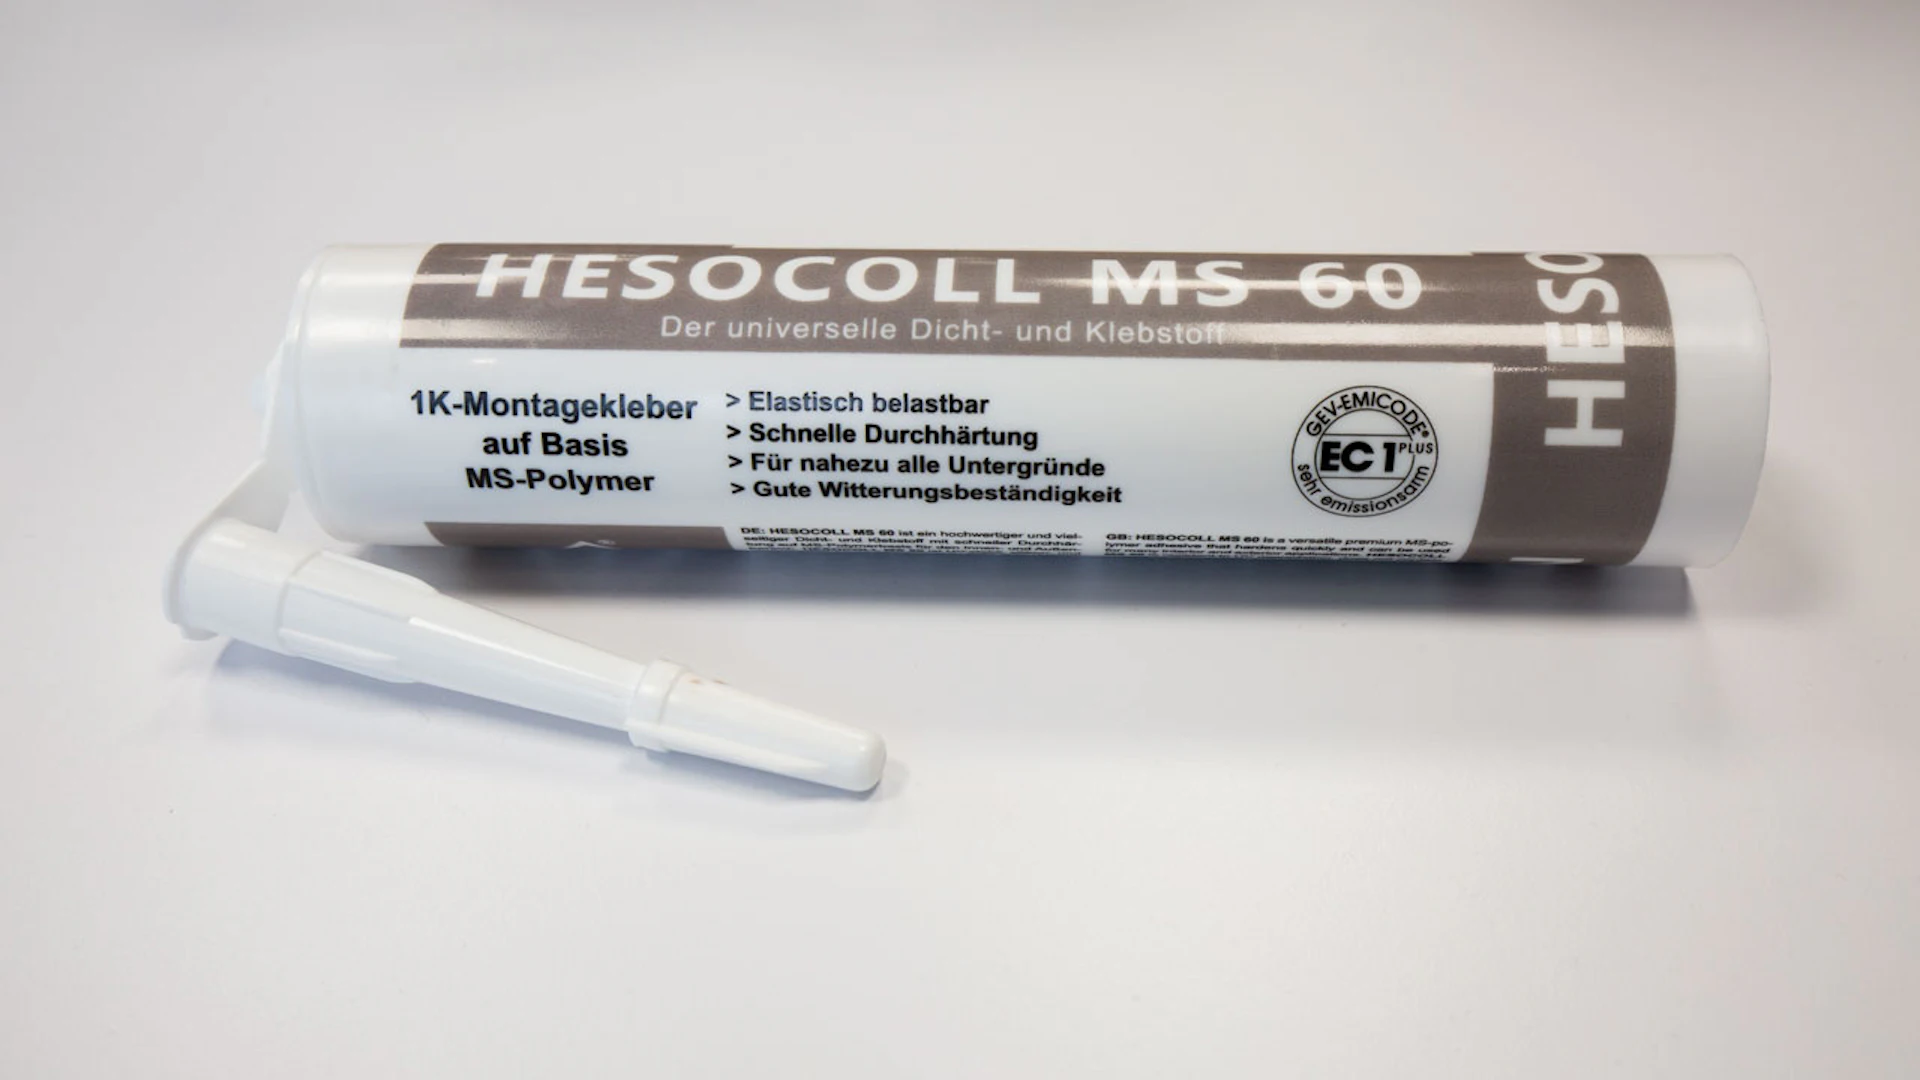 Hesocoll Adesivo di montaggio monocomponente MS60 - 290 ml